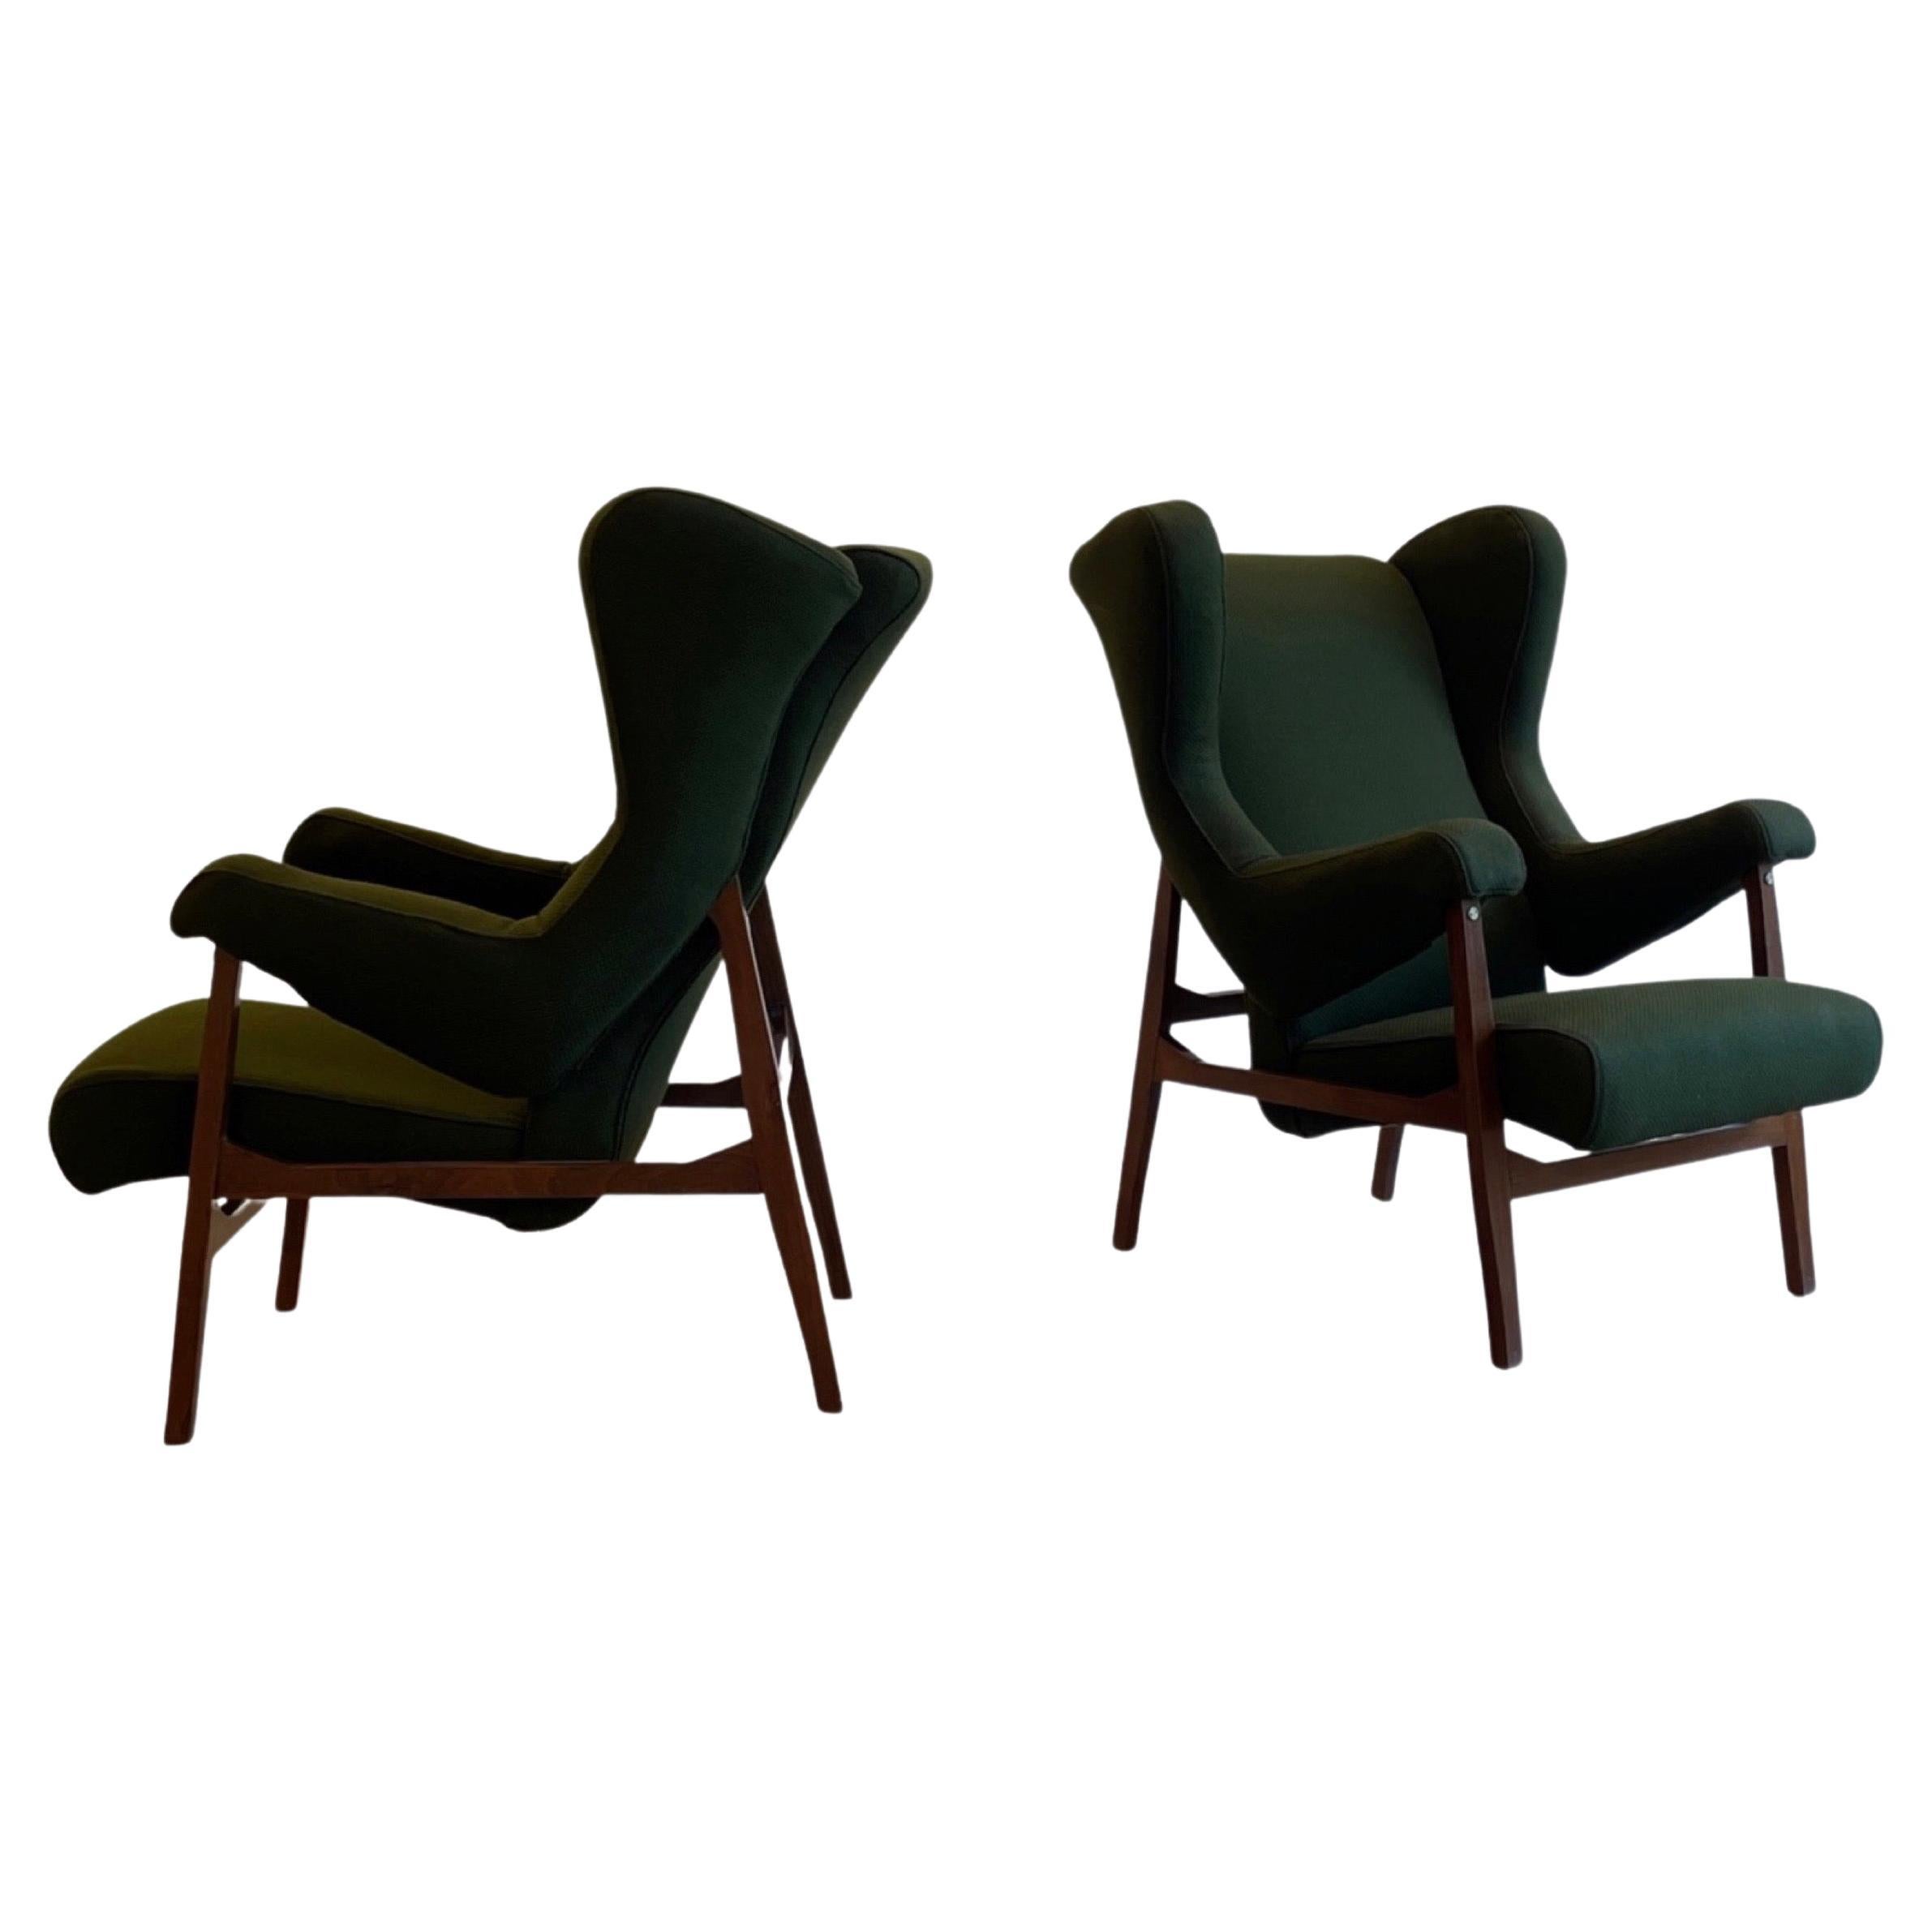 Rare fauteuil de salon "Fiorenza" de Franco Albini pour Arflex, Italie, 1953